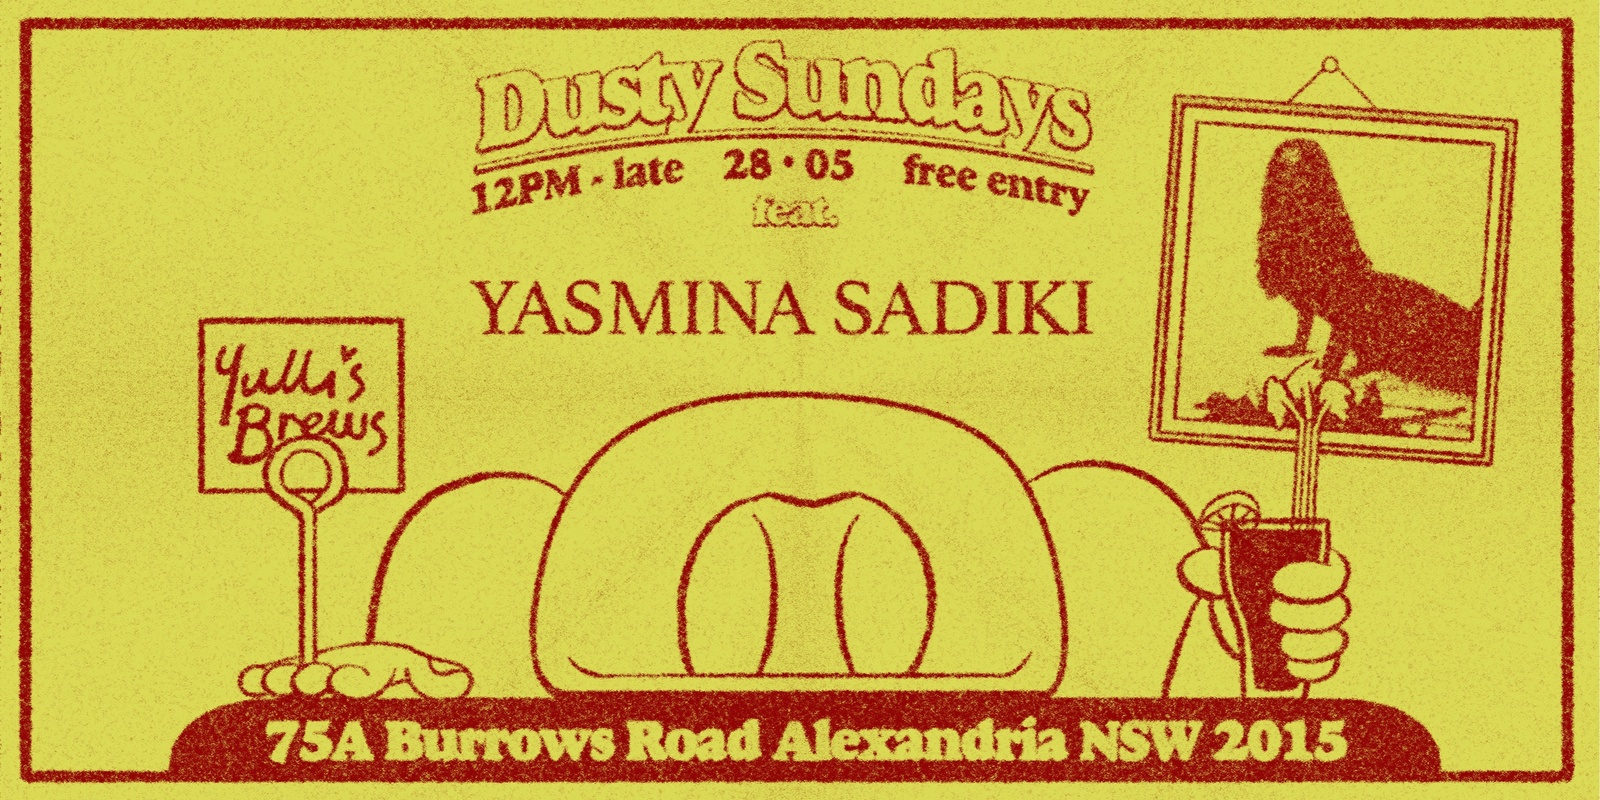 DUSTY SUNDAYS - Yasmina Sadiki